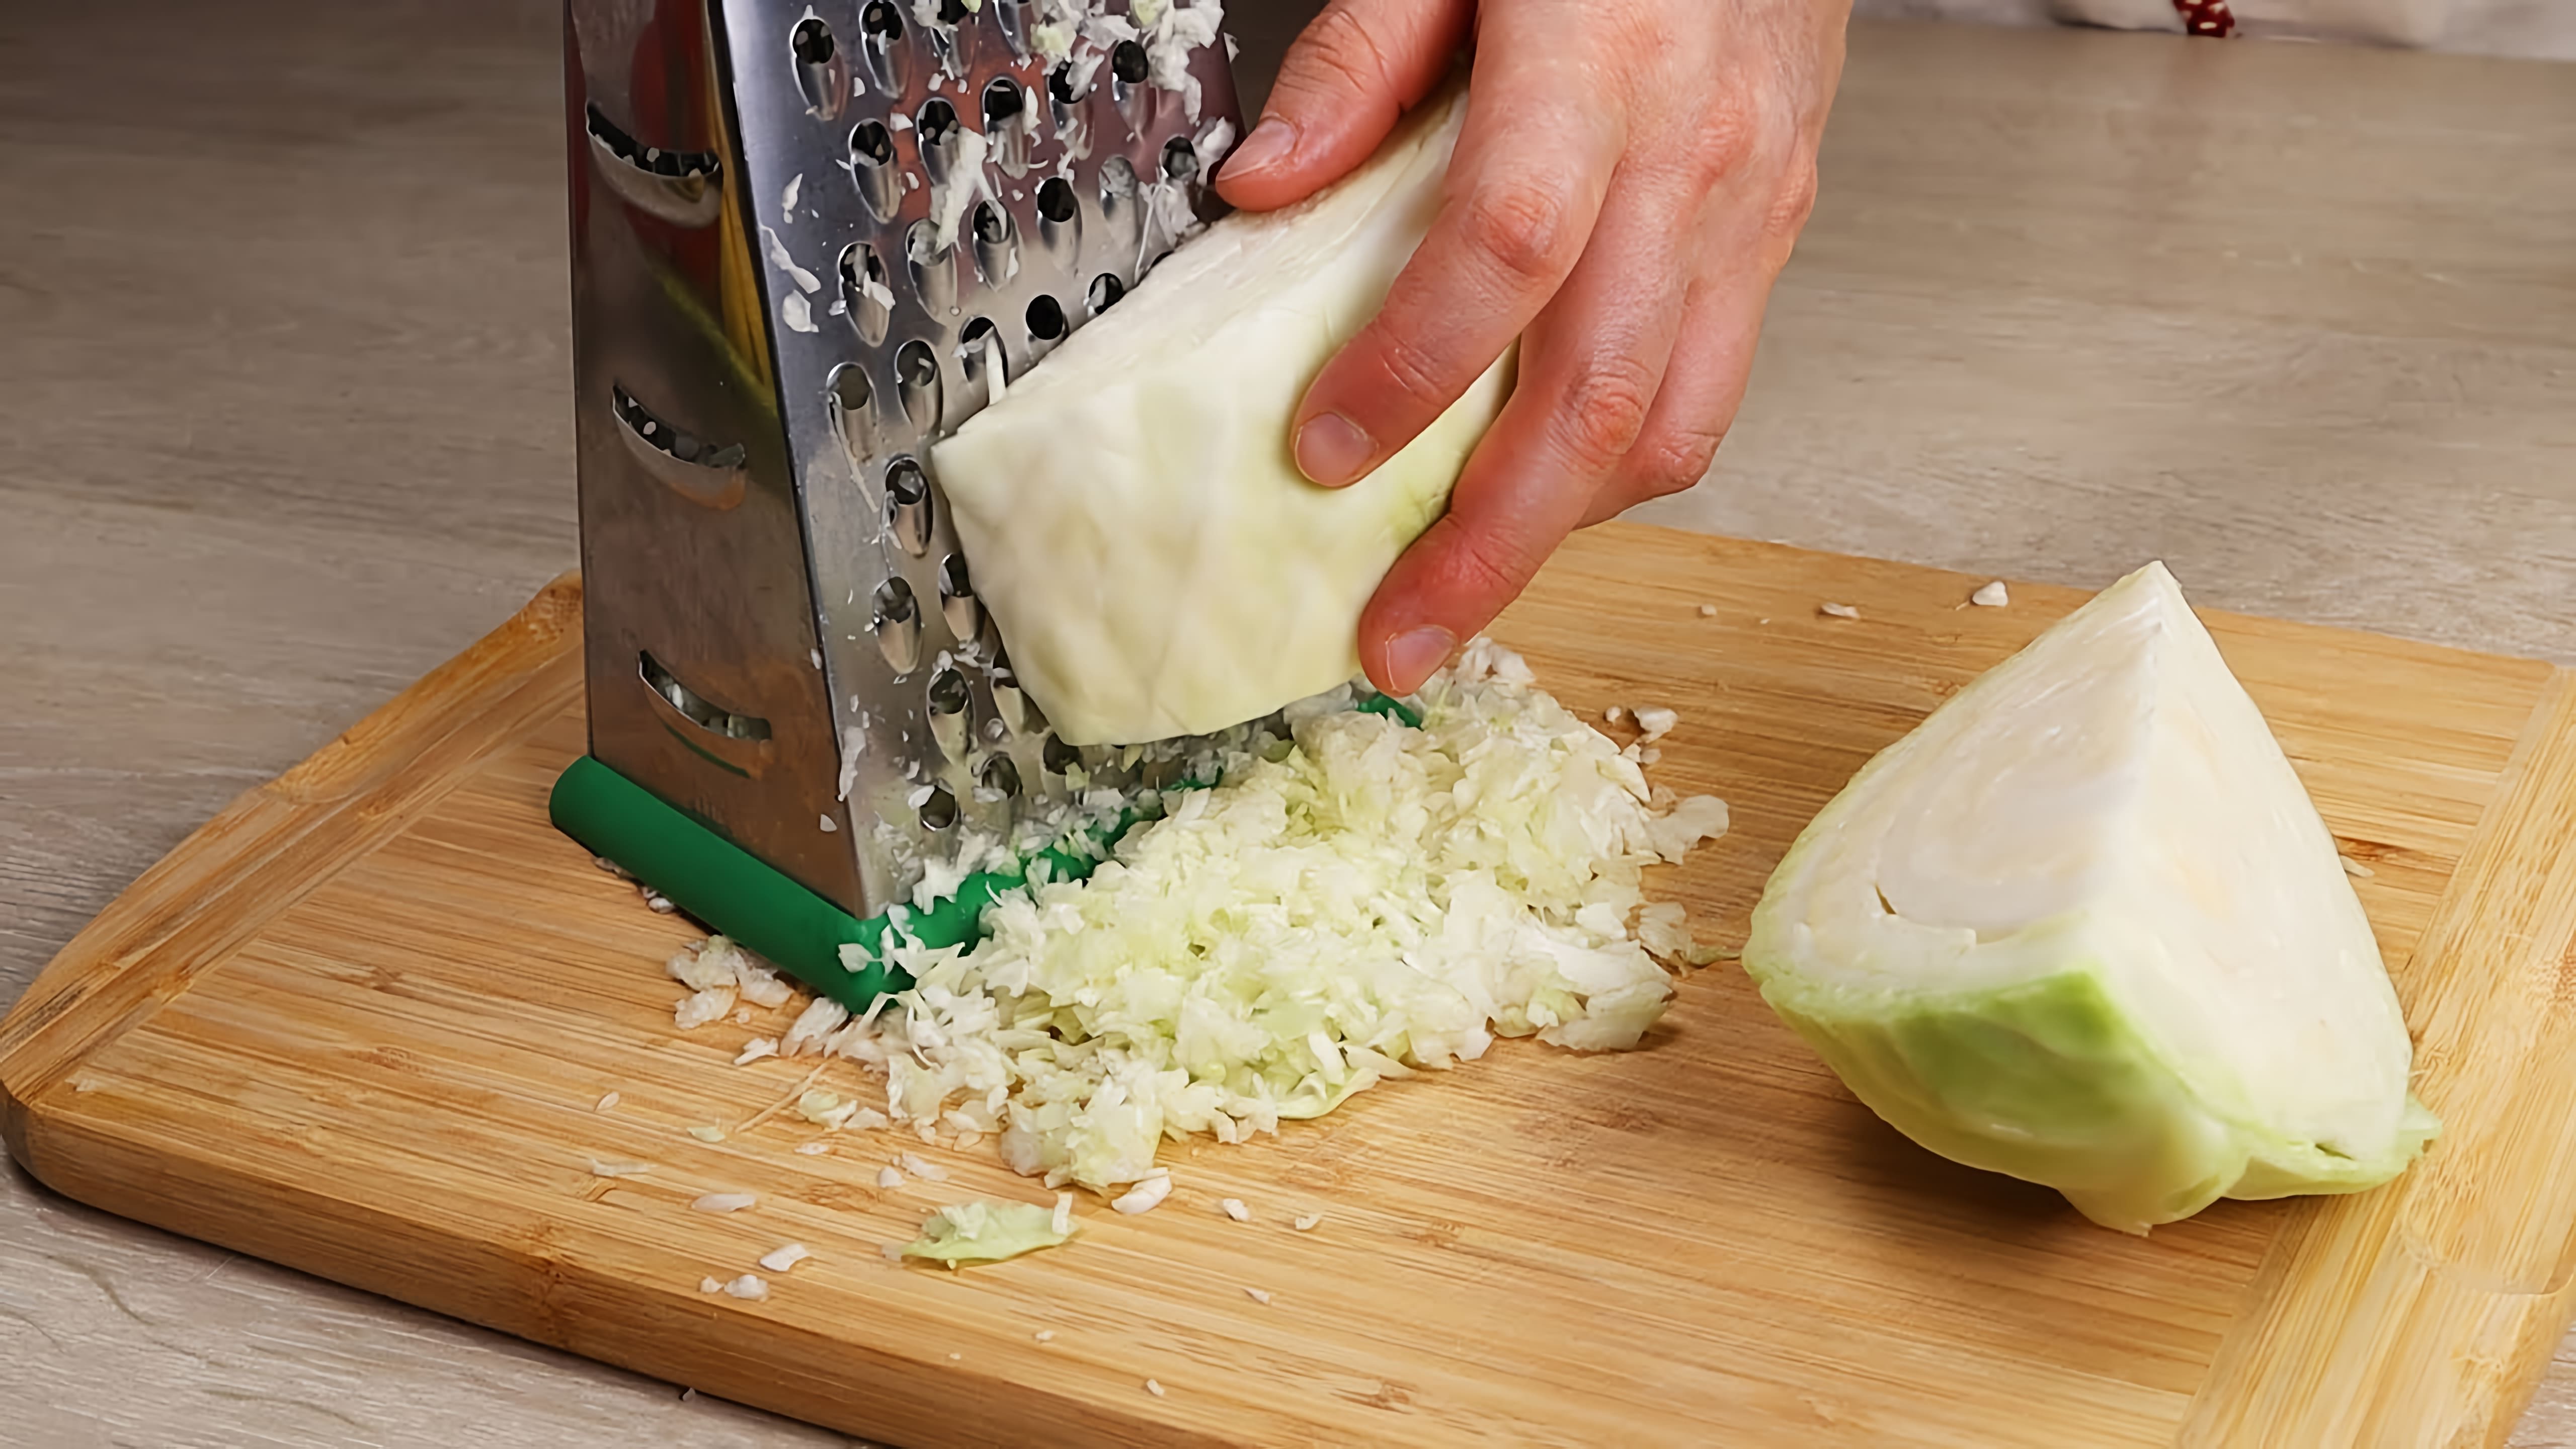 Видео рецепты быстрого приготовления капусты различными способами для ежедневных блюд или праздников